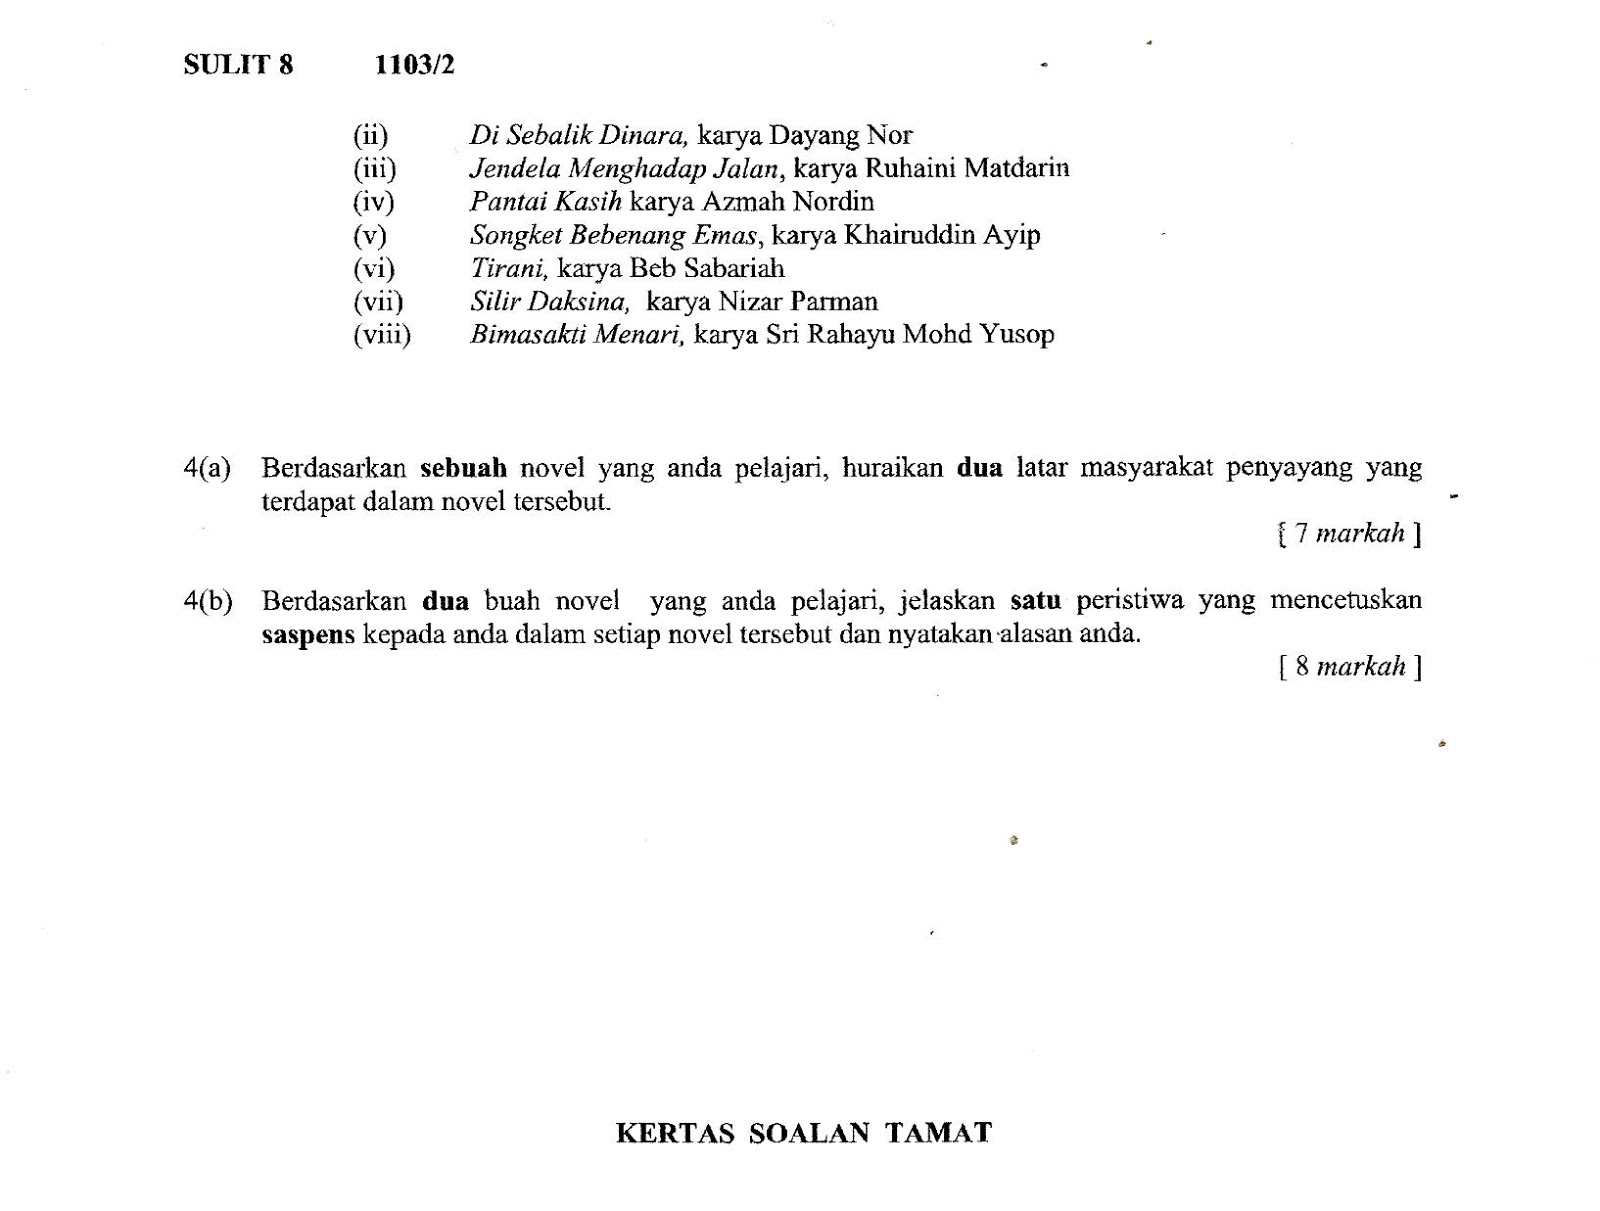 Cadangan pelajar Negeri Terengganu, soalan 4 (a):-